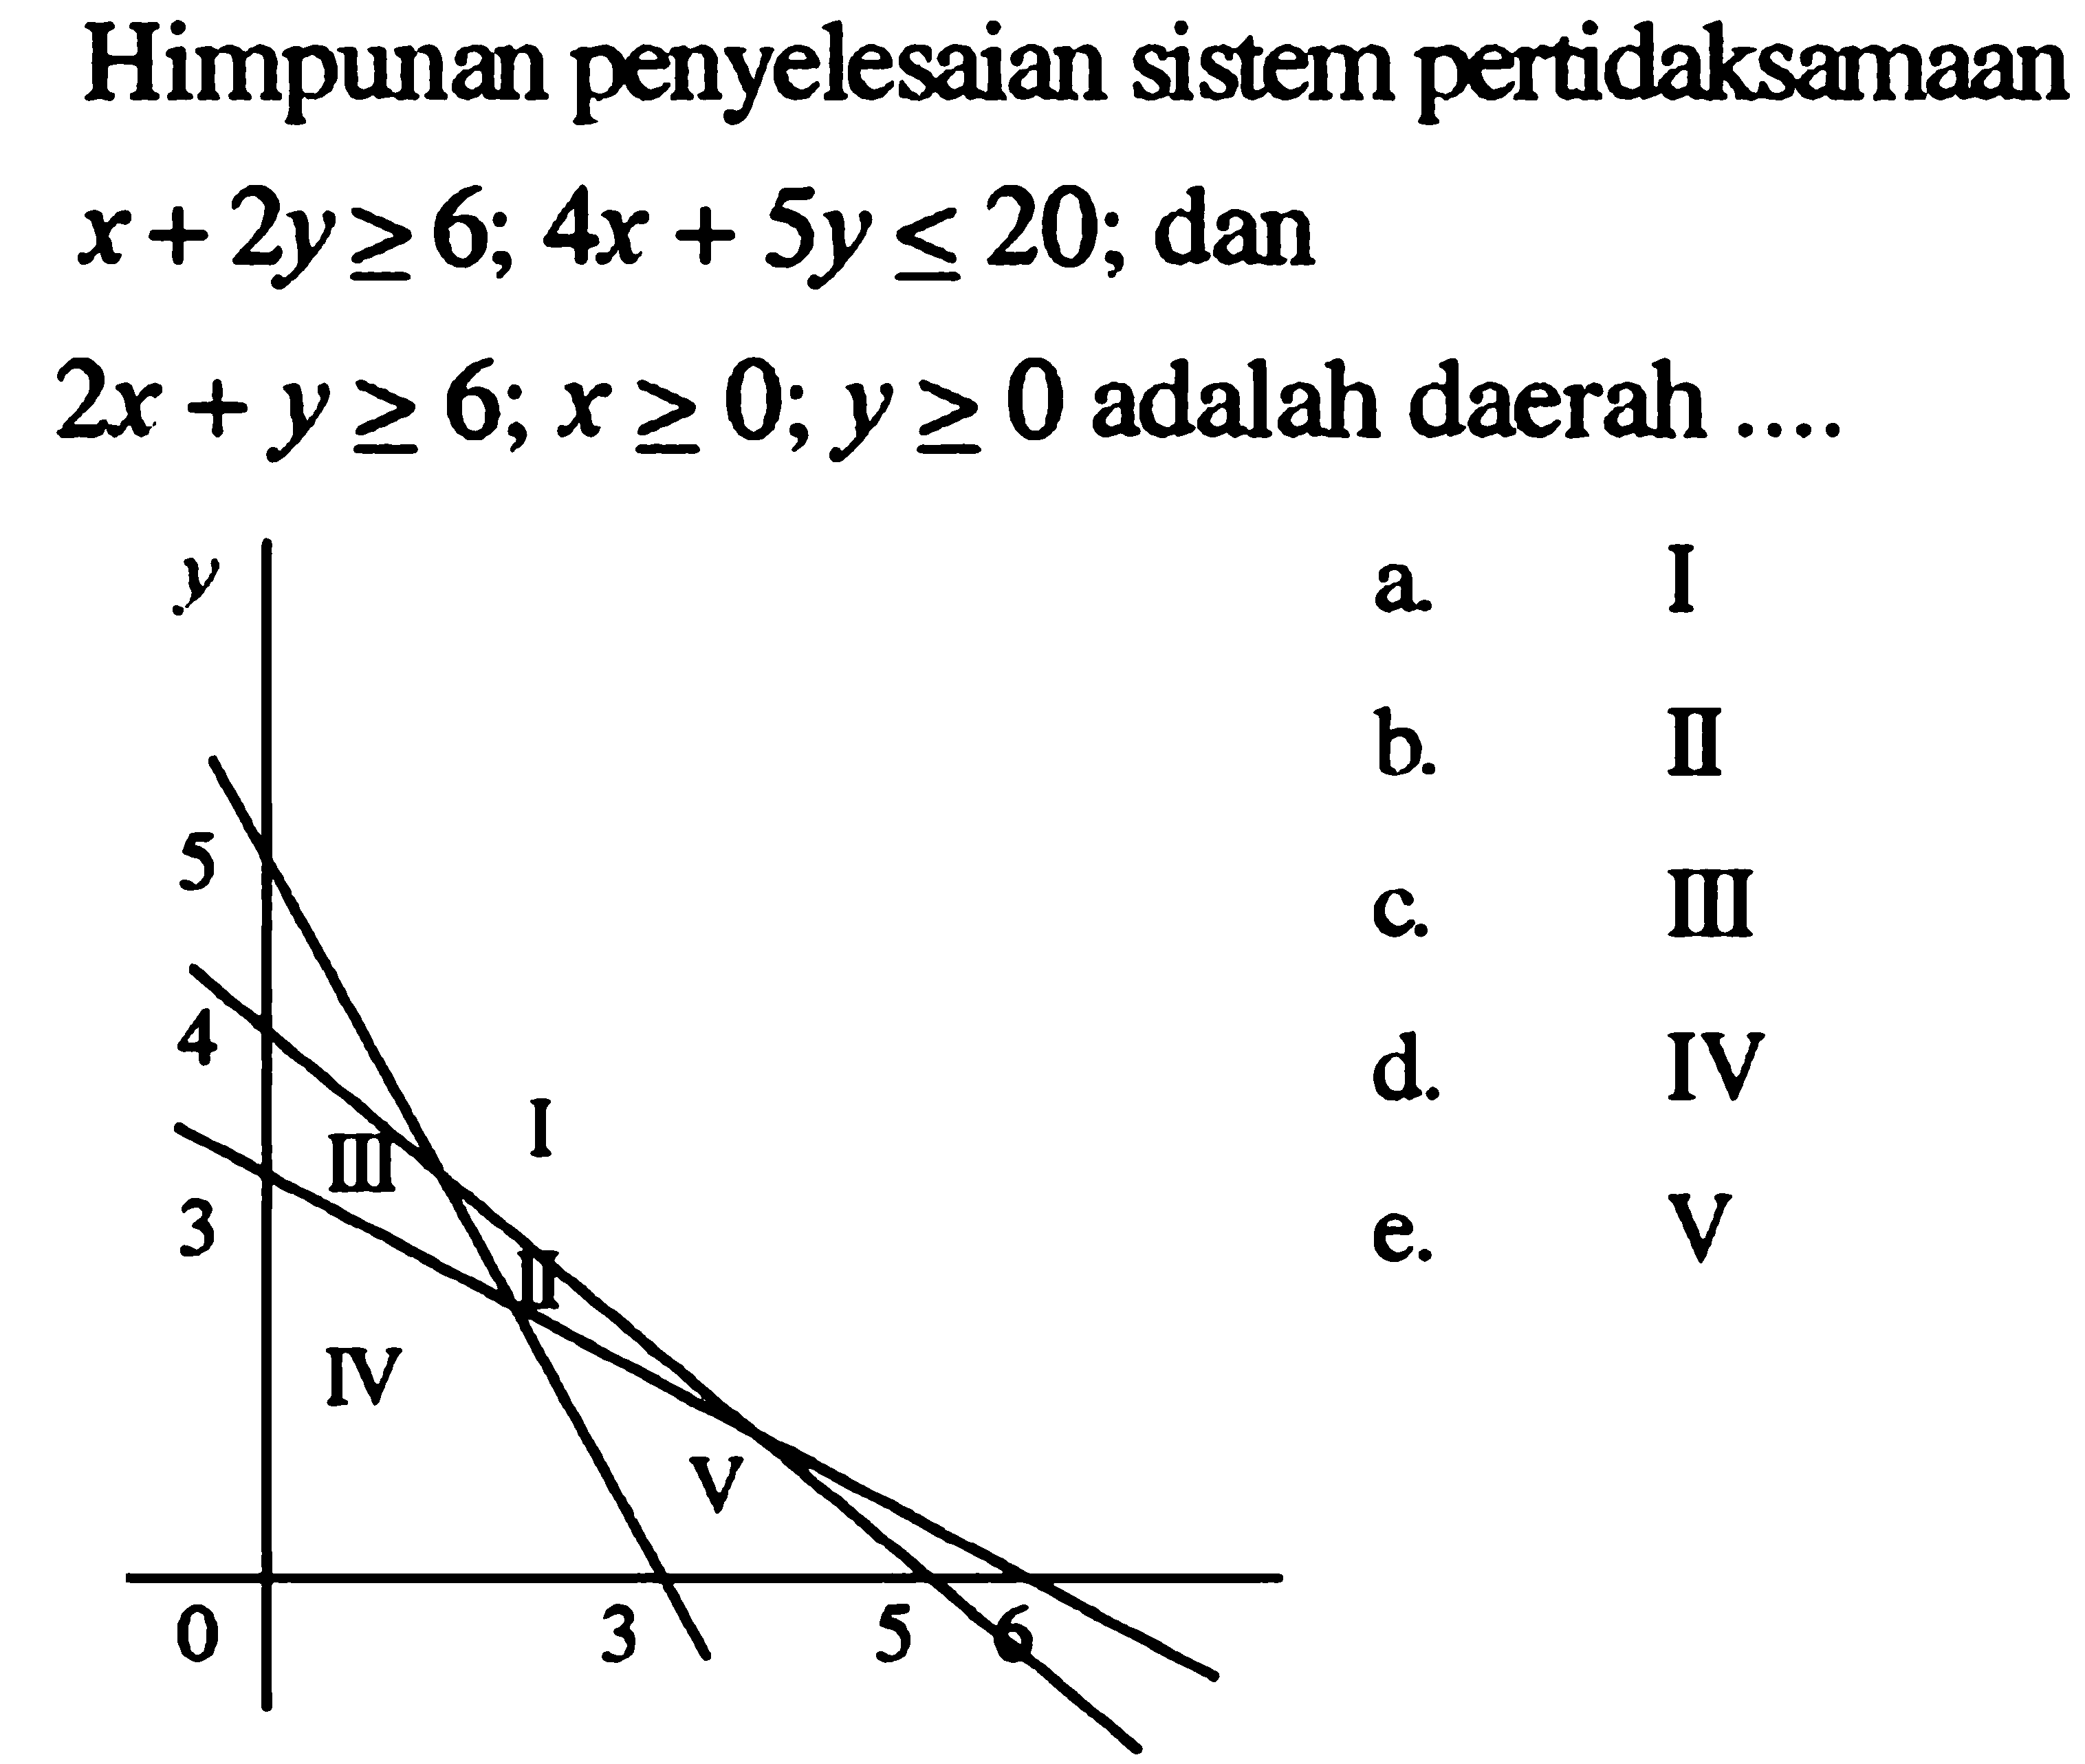 Himpunan penyelesaian sistem pertidaksamaan x+2y>=6; 4x+5y<=20; dan 2x+y>=6; X.=; y>= adalah daerah ....